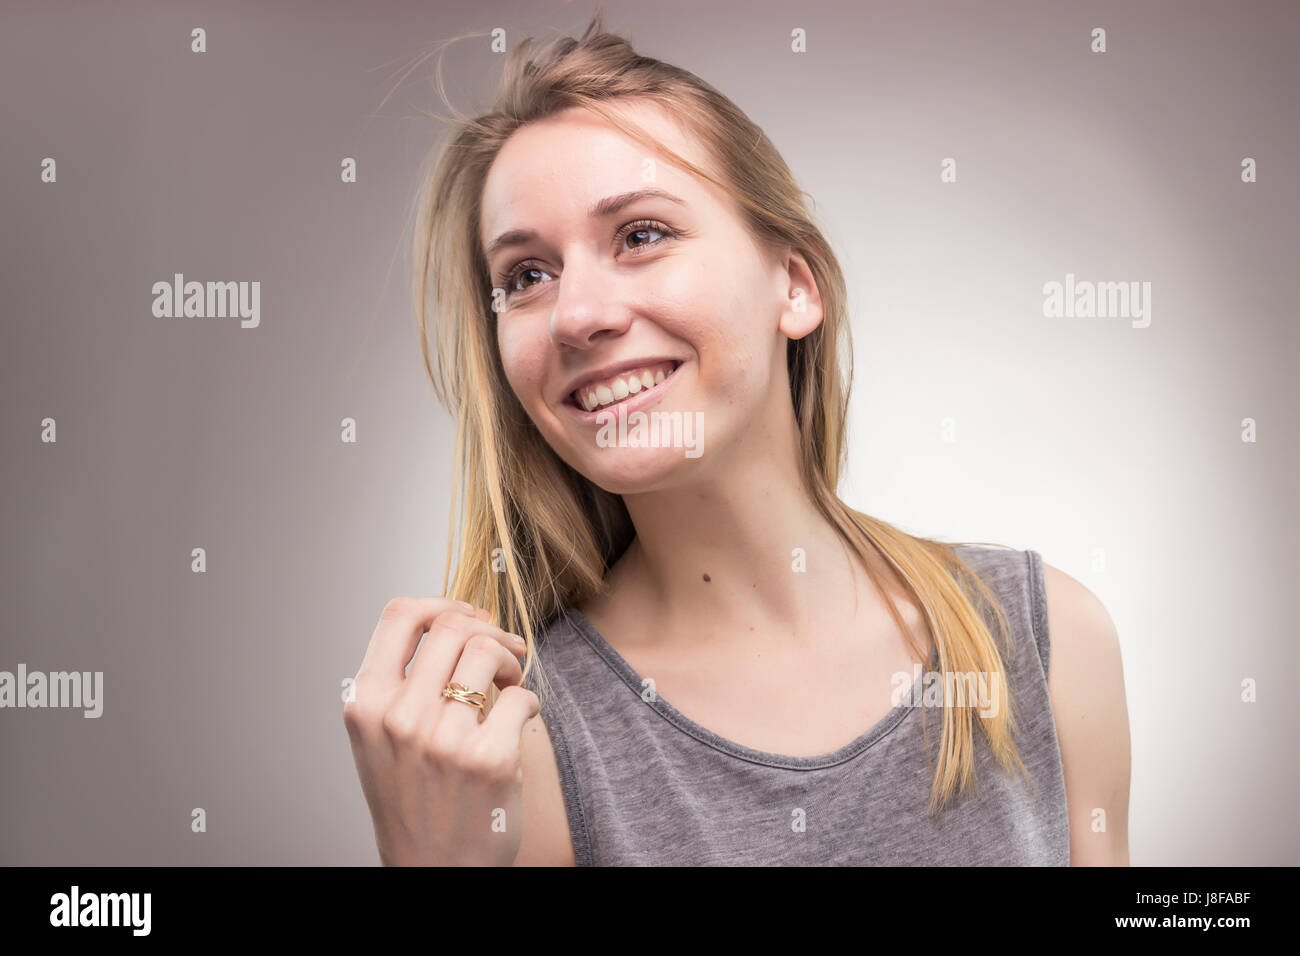 Ritratti, una giovane donna adulta, solo di sfondo per studio, abiti casual, faccia di testa headshot, Foto Stock